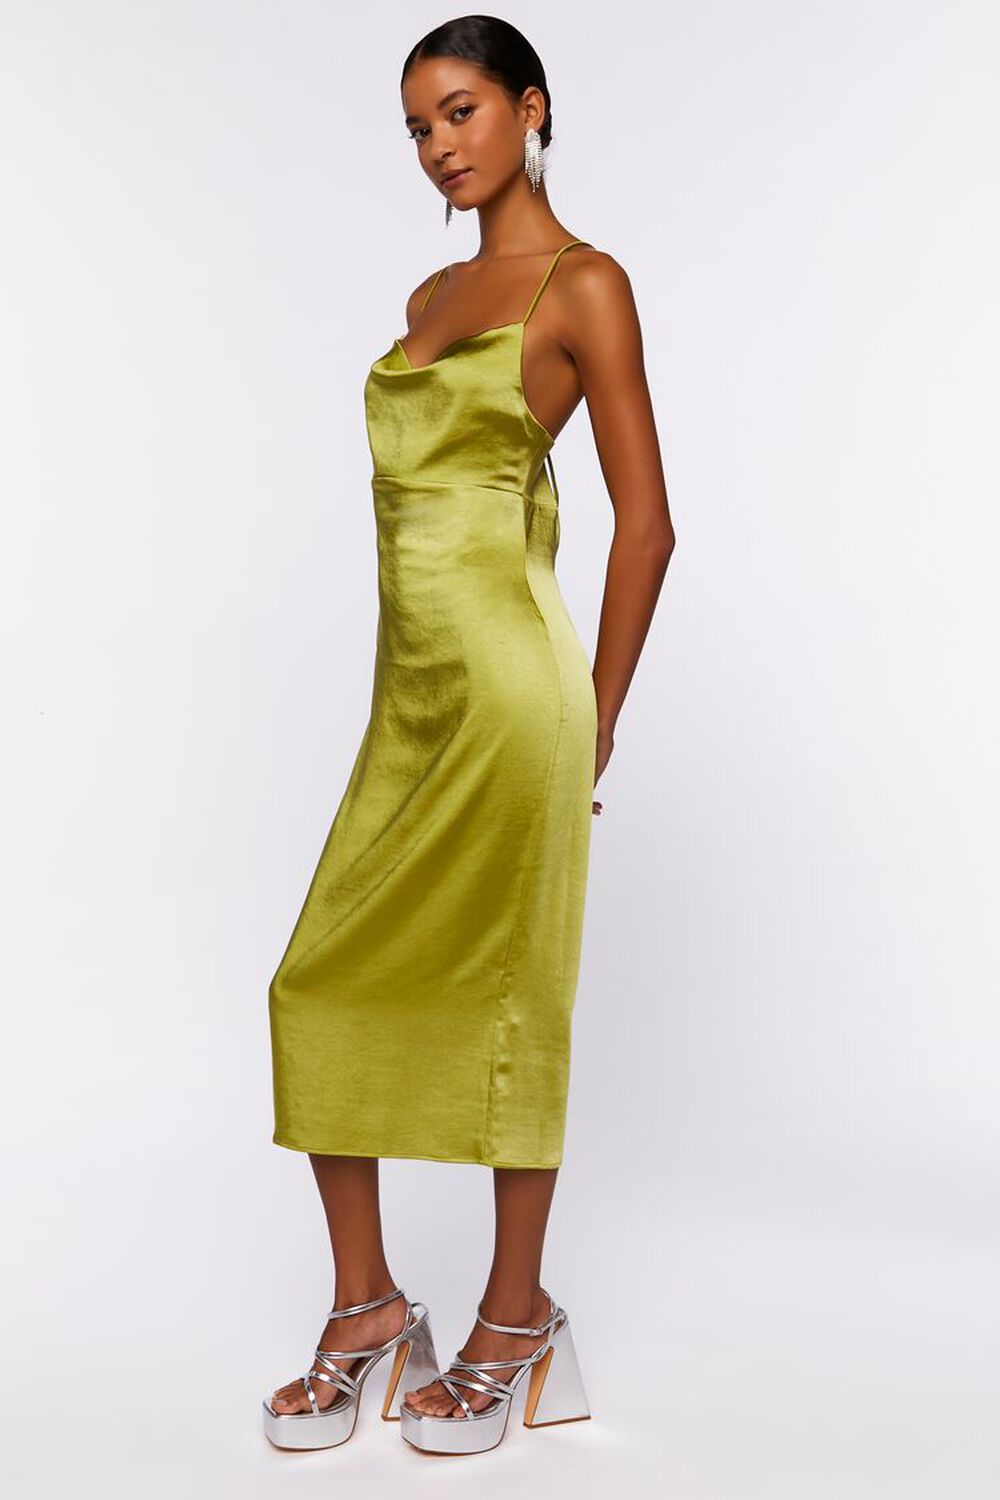 HERBAL GREEN Satin Cowl Midi Slip Dress, image 2